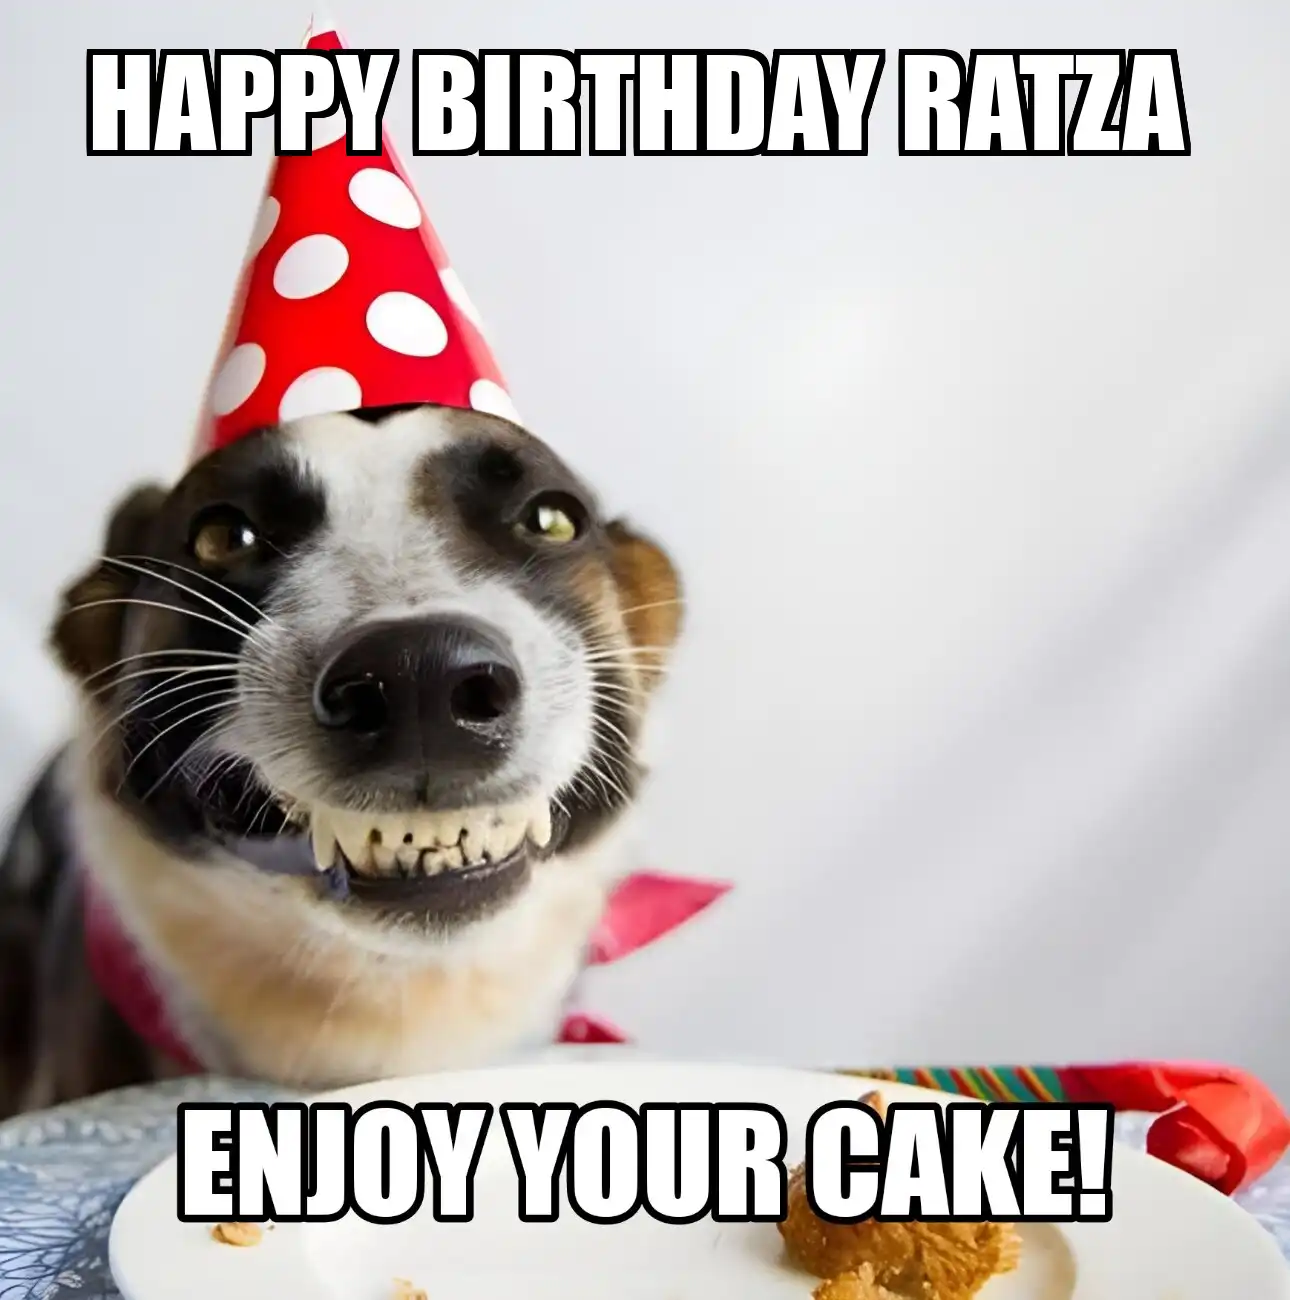 Happy Birthday Ratza Enjoy Your Cake Dog Meme